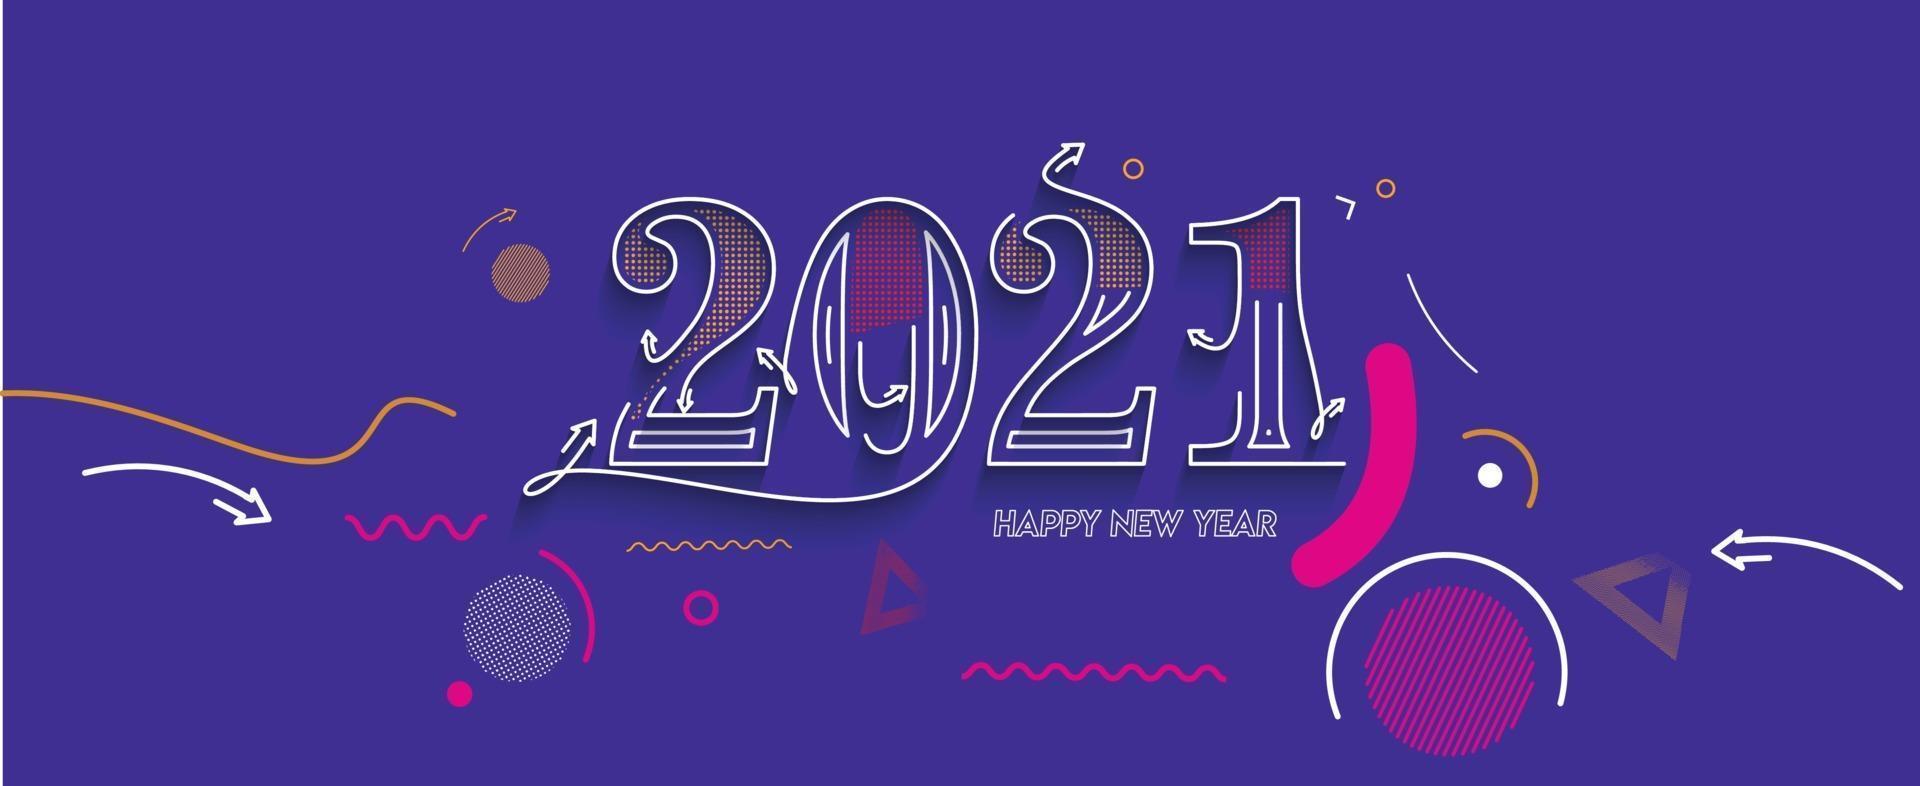 banner de tipografia de texto colorido feliz ano novo 2021 vetor